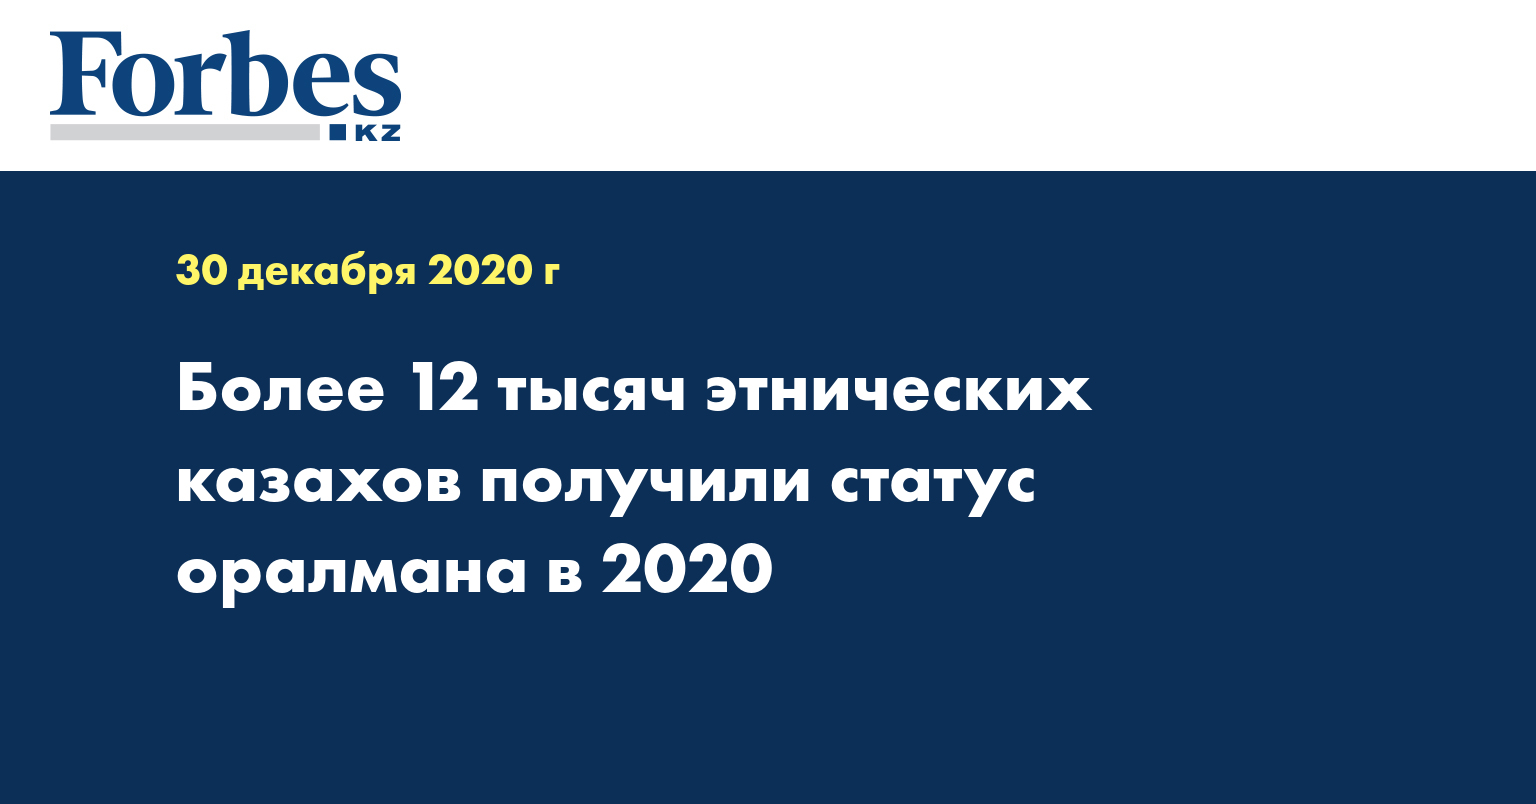 Более 12 тысяч этнических казахов получили статус оралмана в 2020